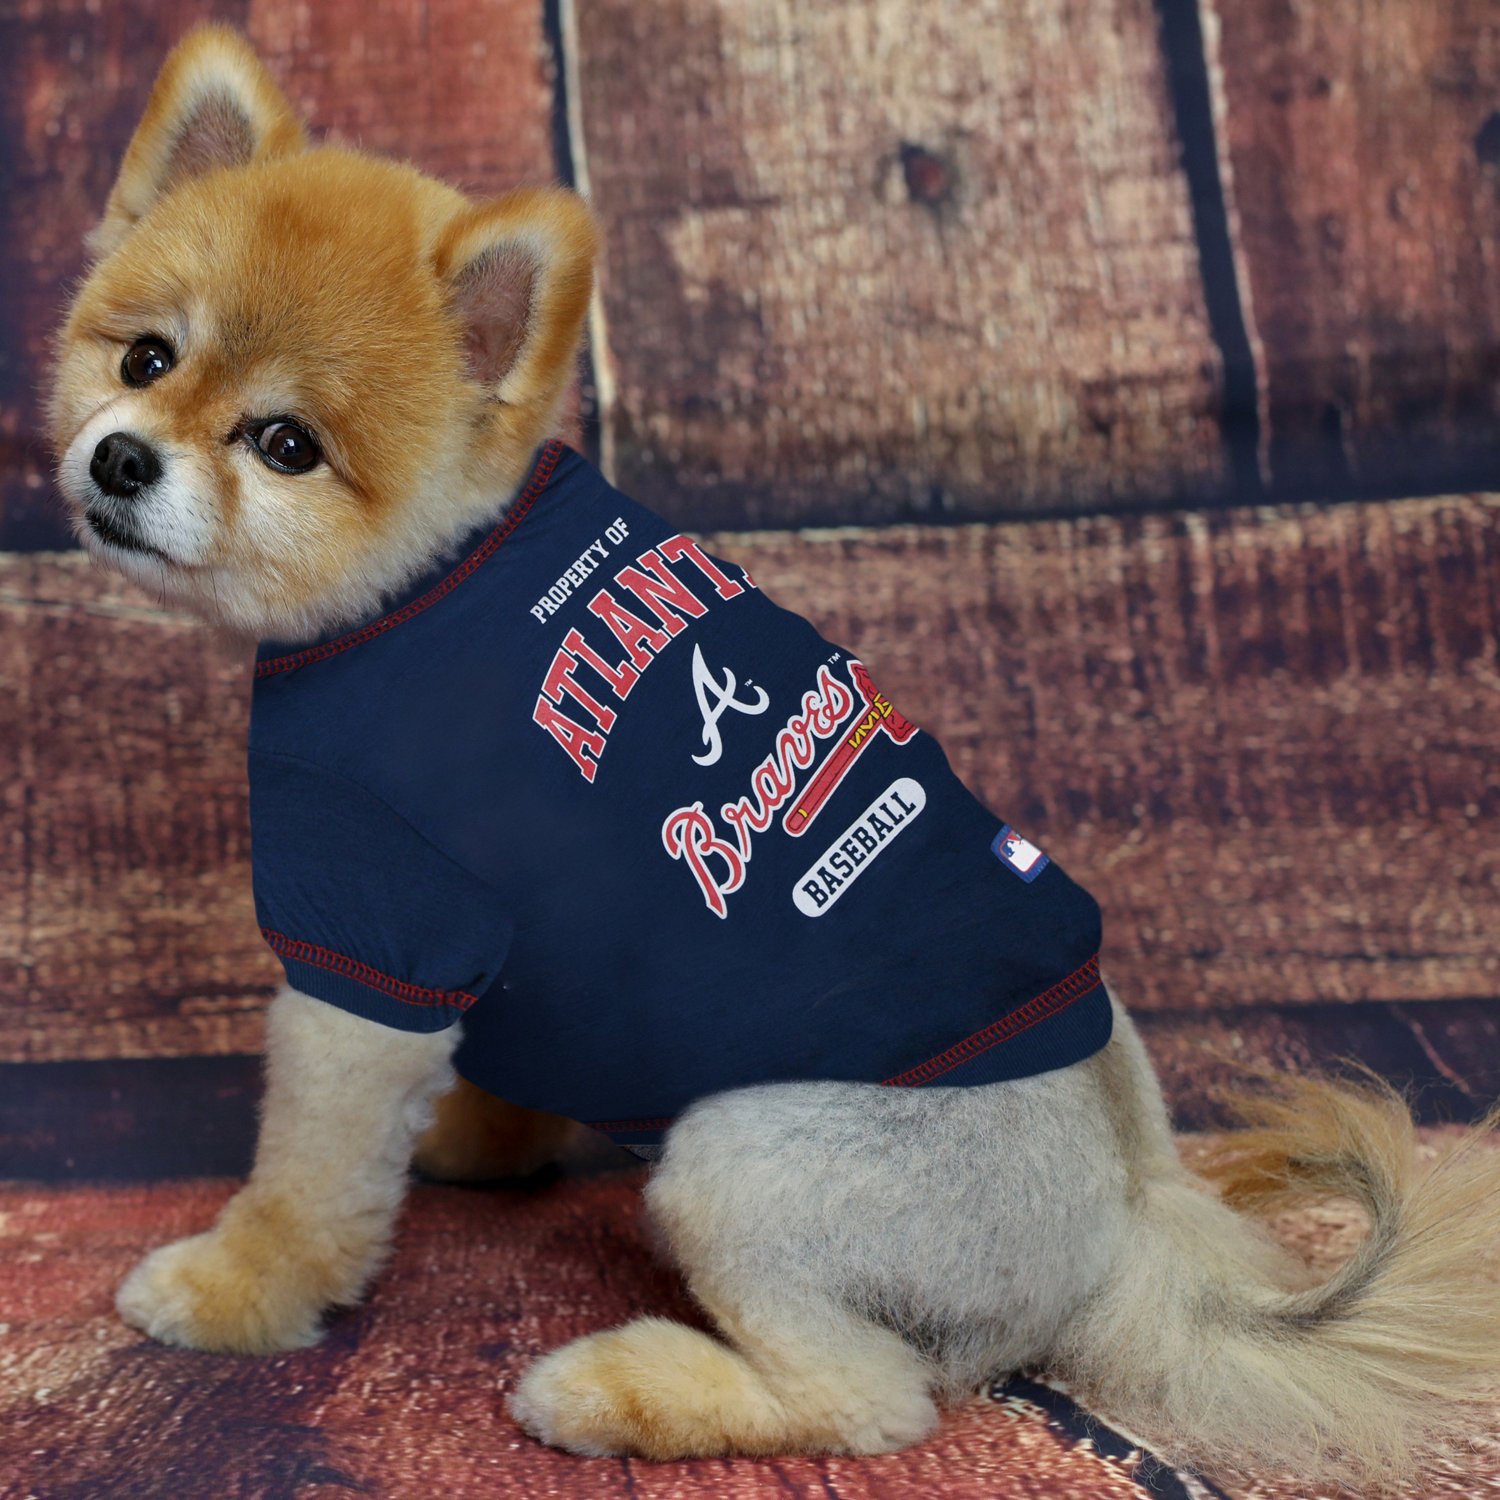 Pets First Atlanta Braves Dog T-shirt